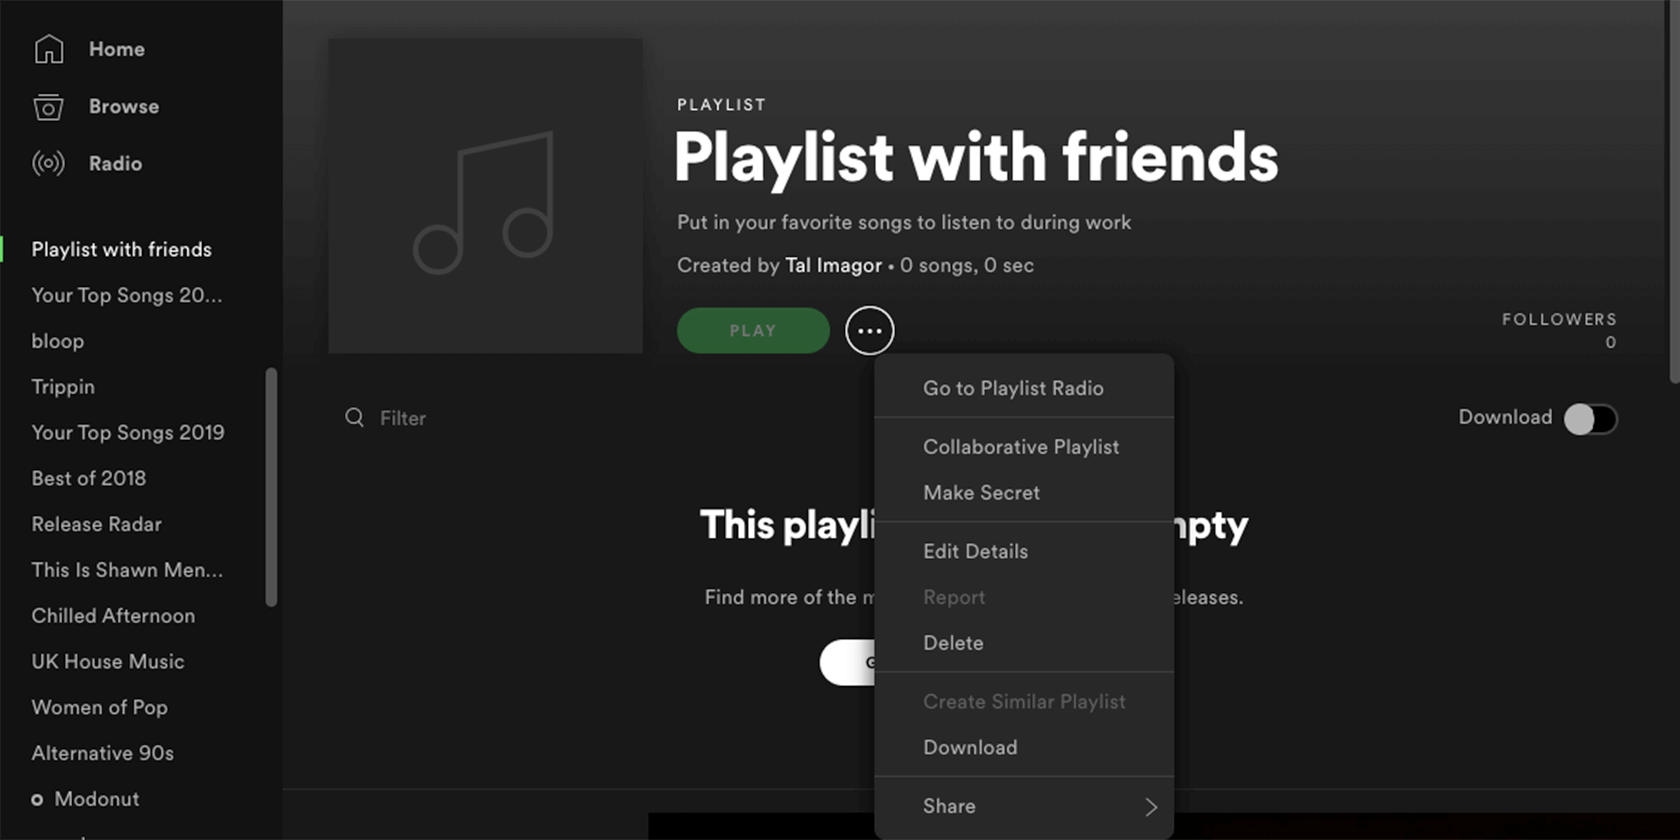 make playlist collaborative - Come creare una playlist collaborativa su Spotify